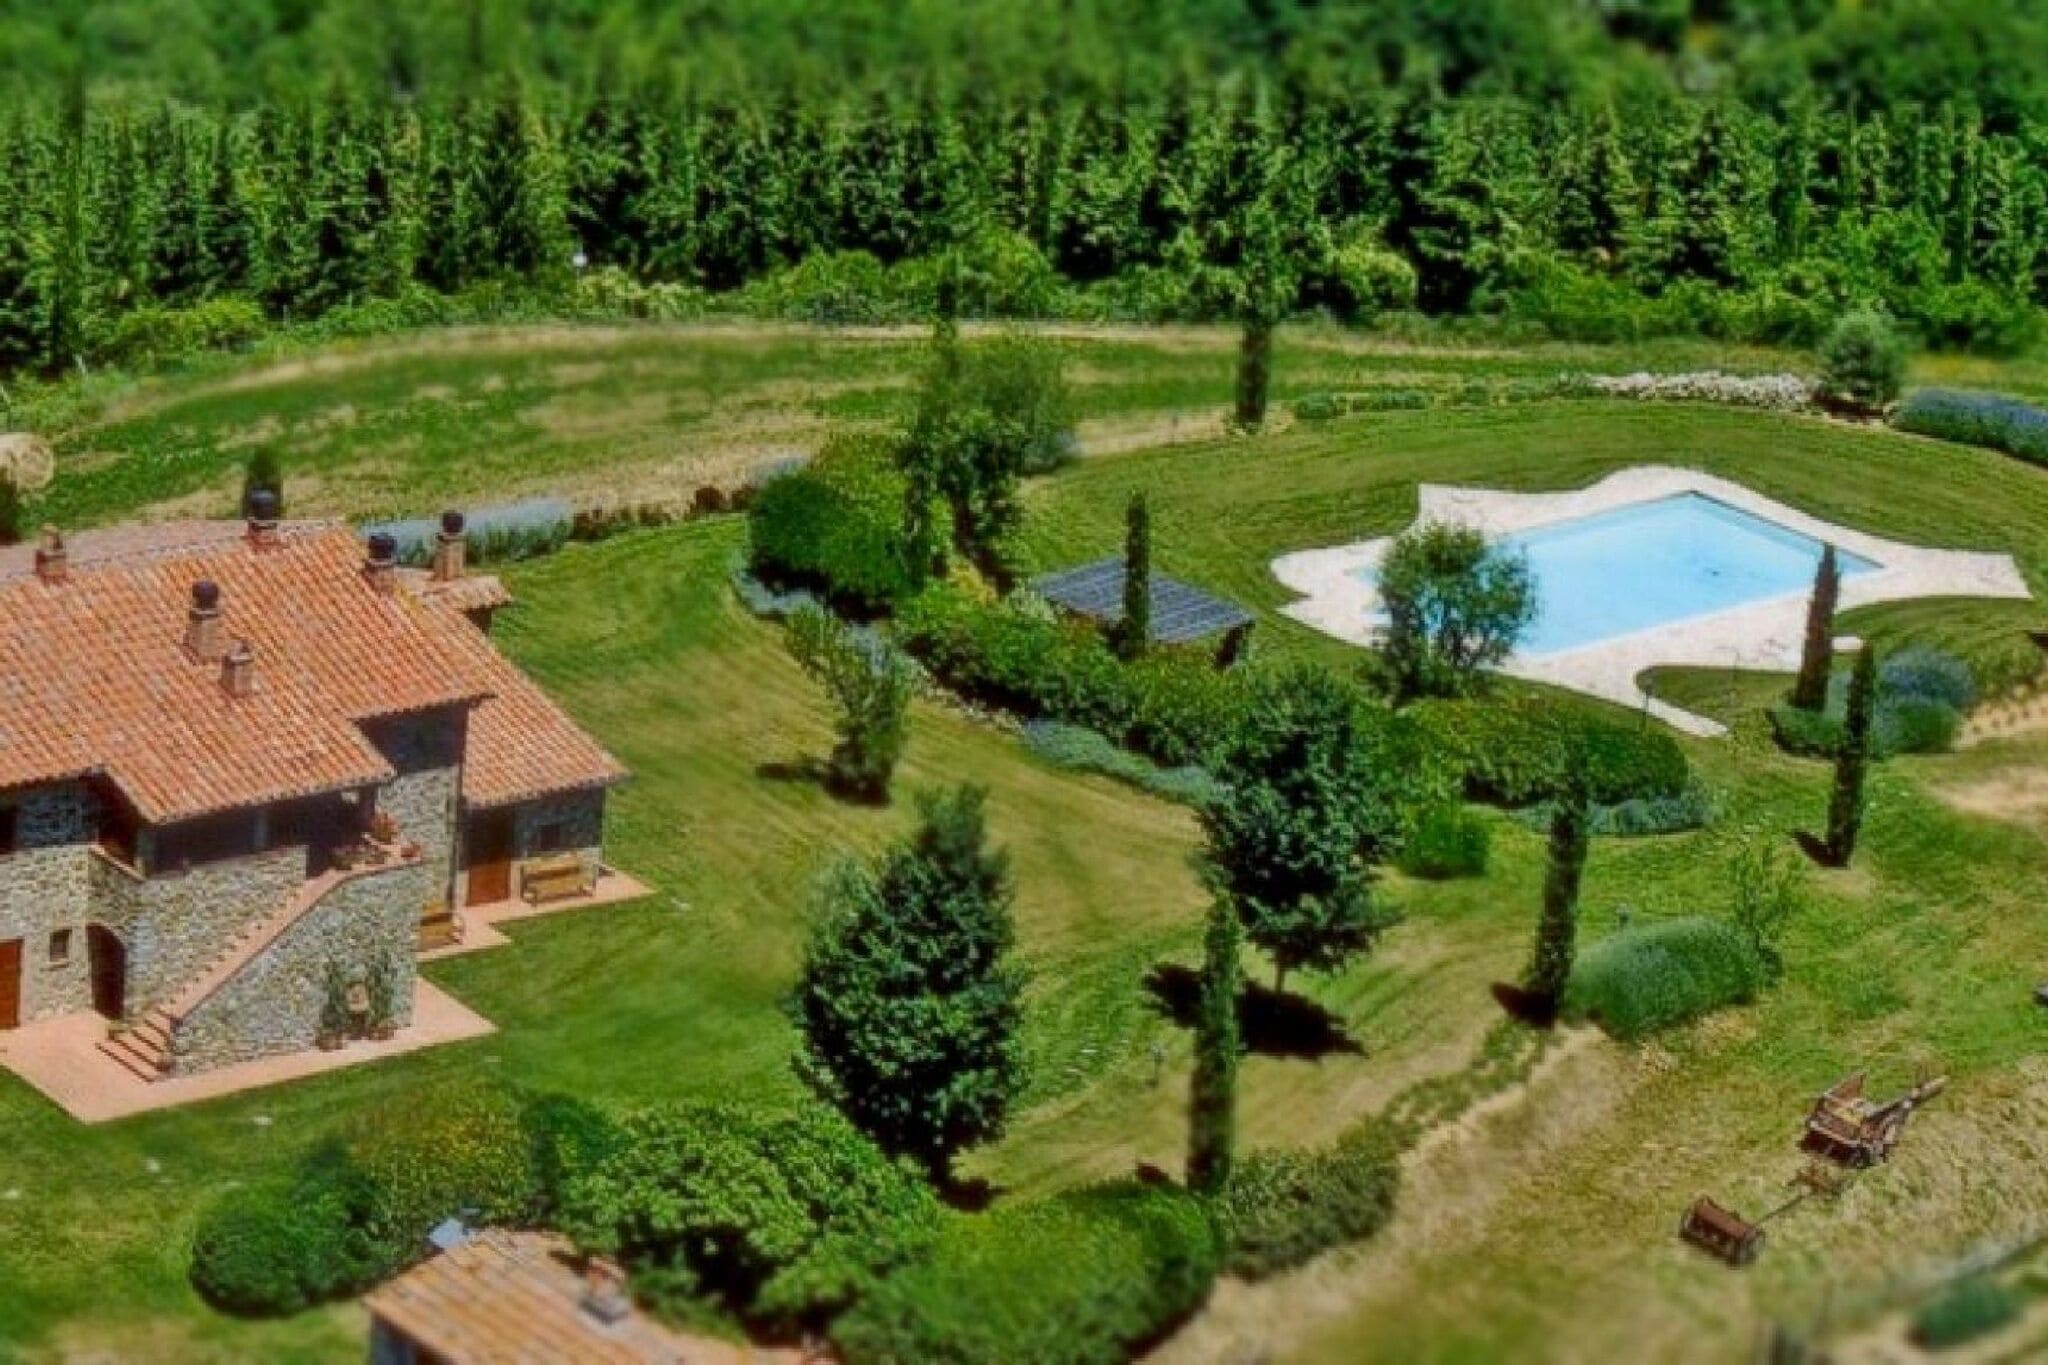 Spacious Villa in Città della Pieve with Pool